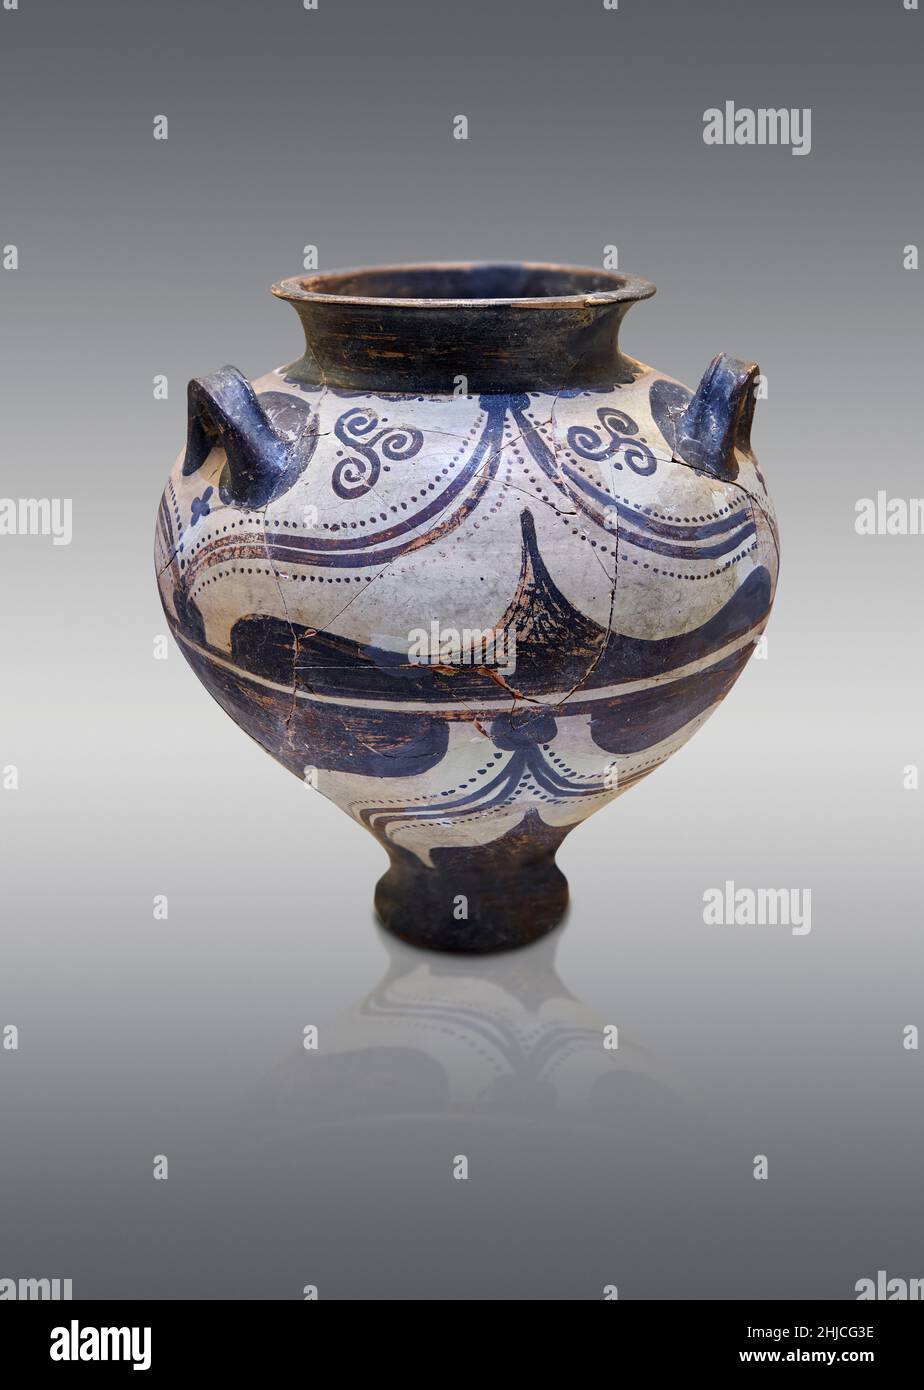 Ceramica micenea - vaso piriforme in terracotta con disegno stilizzato scorrevole, tomba da camera ET, 1500-1450 a.C. Nauplia Evangelistria. Nafplion Archaeologica Foto Stock